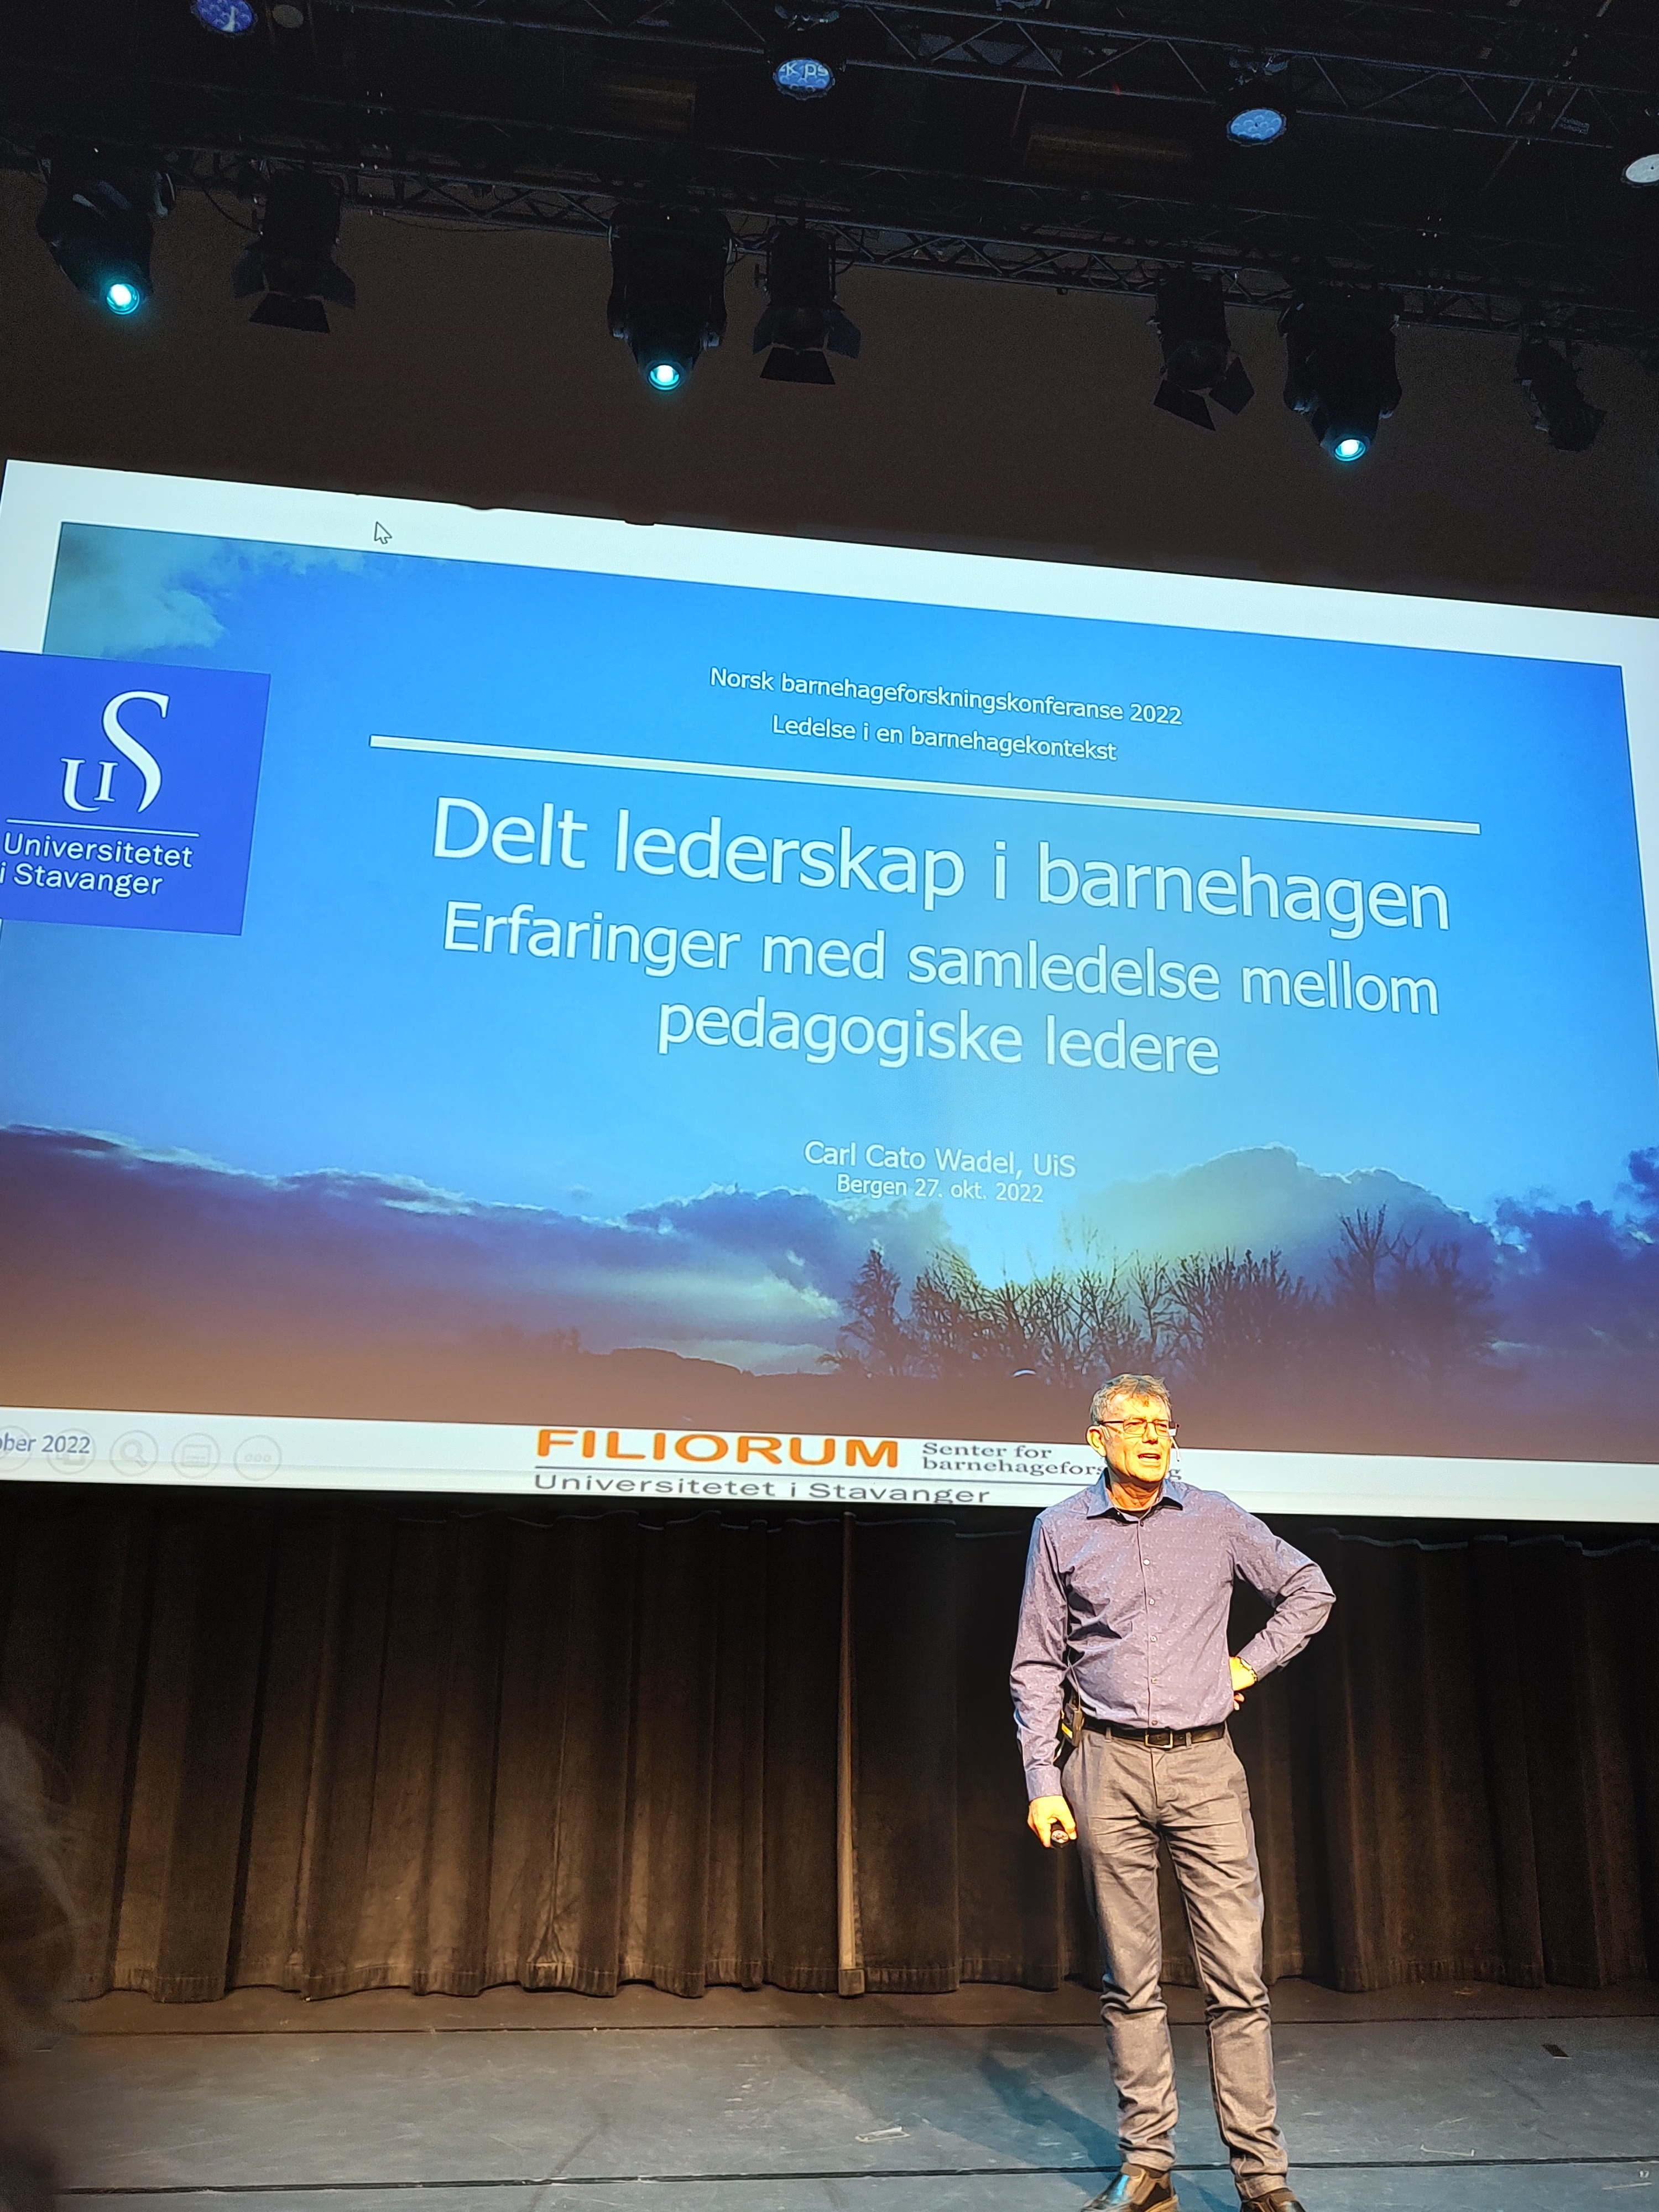 Carl Cato Wadel på scenen under Norsk barnehageforskningskonferanse